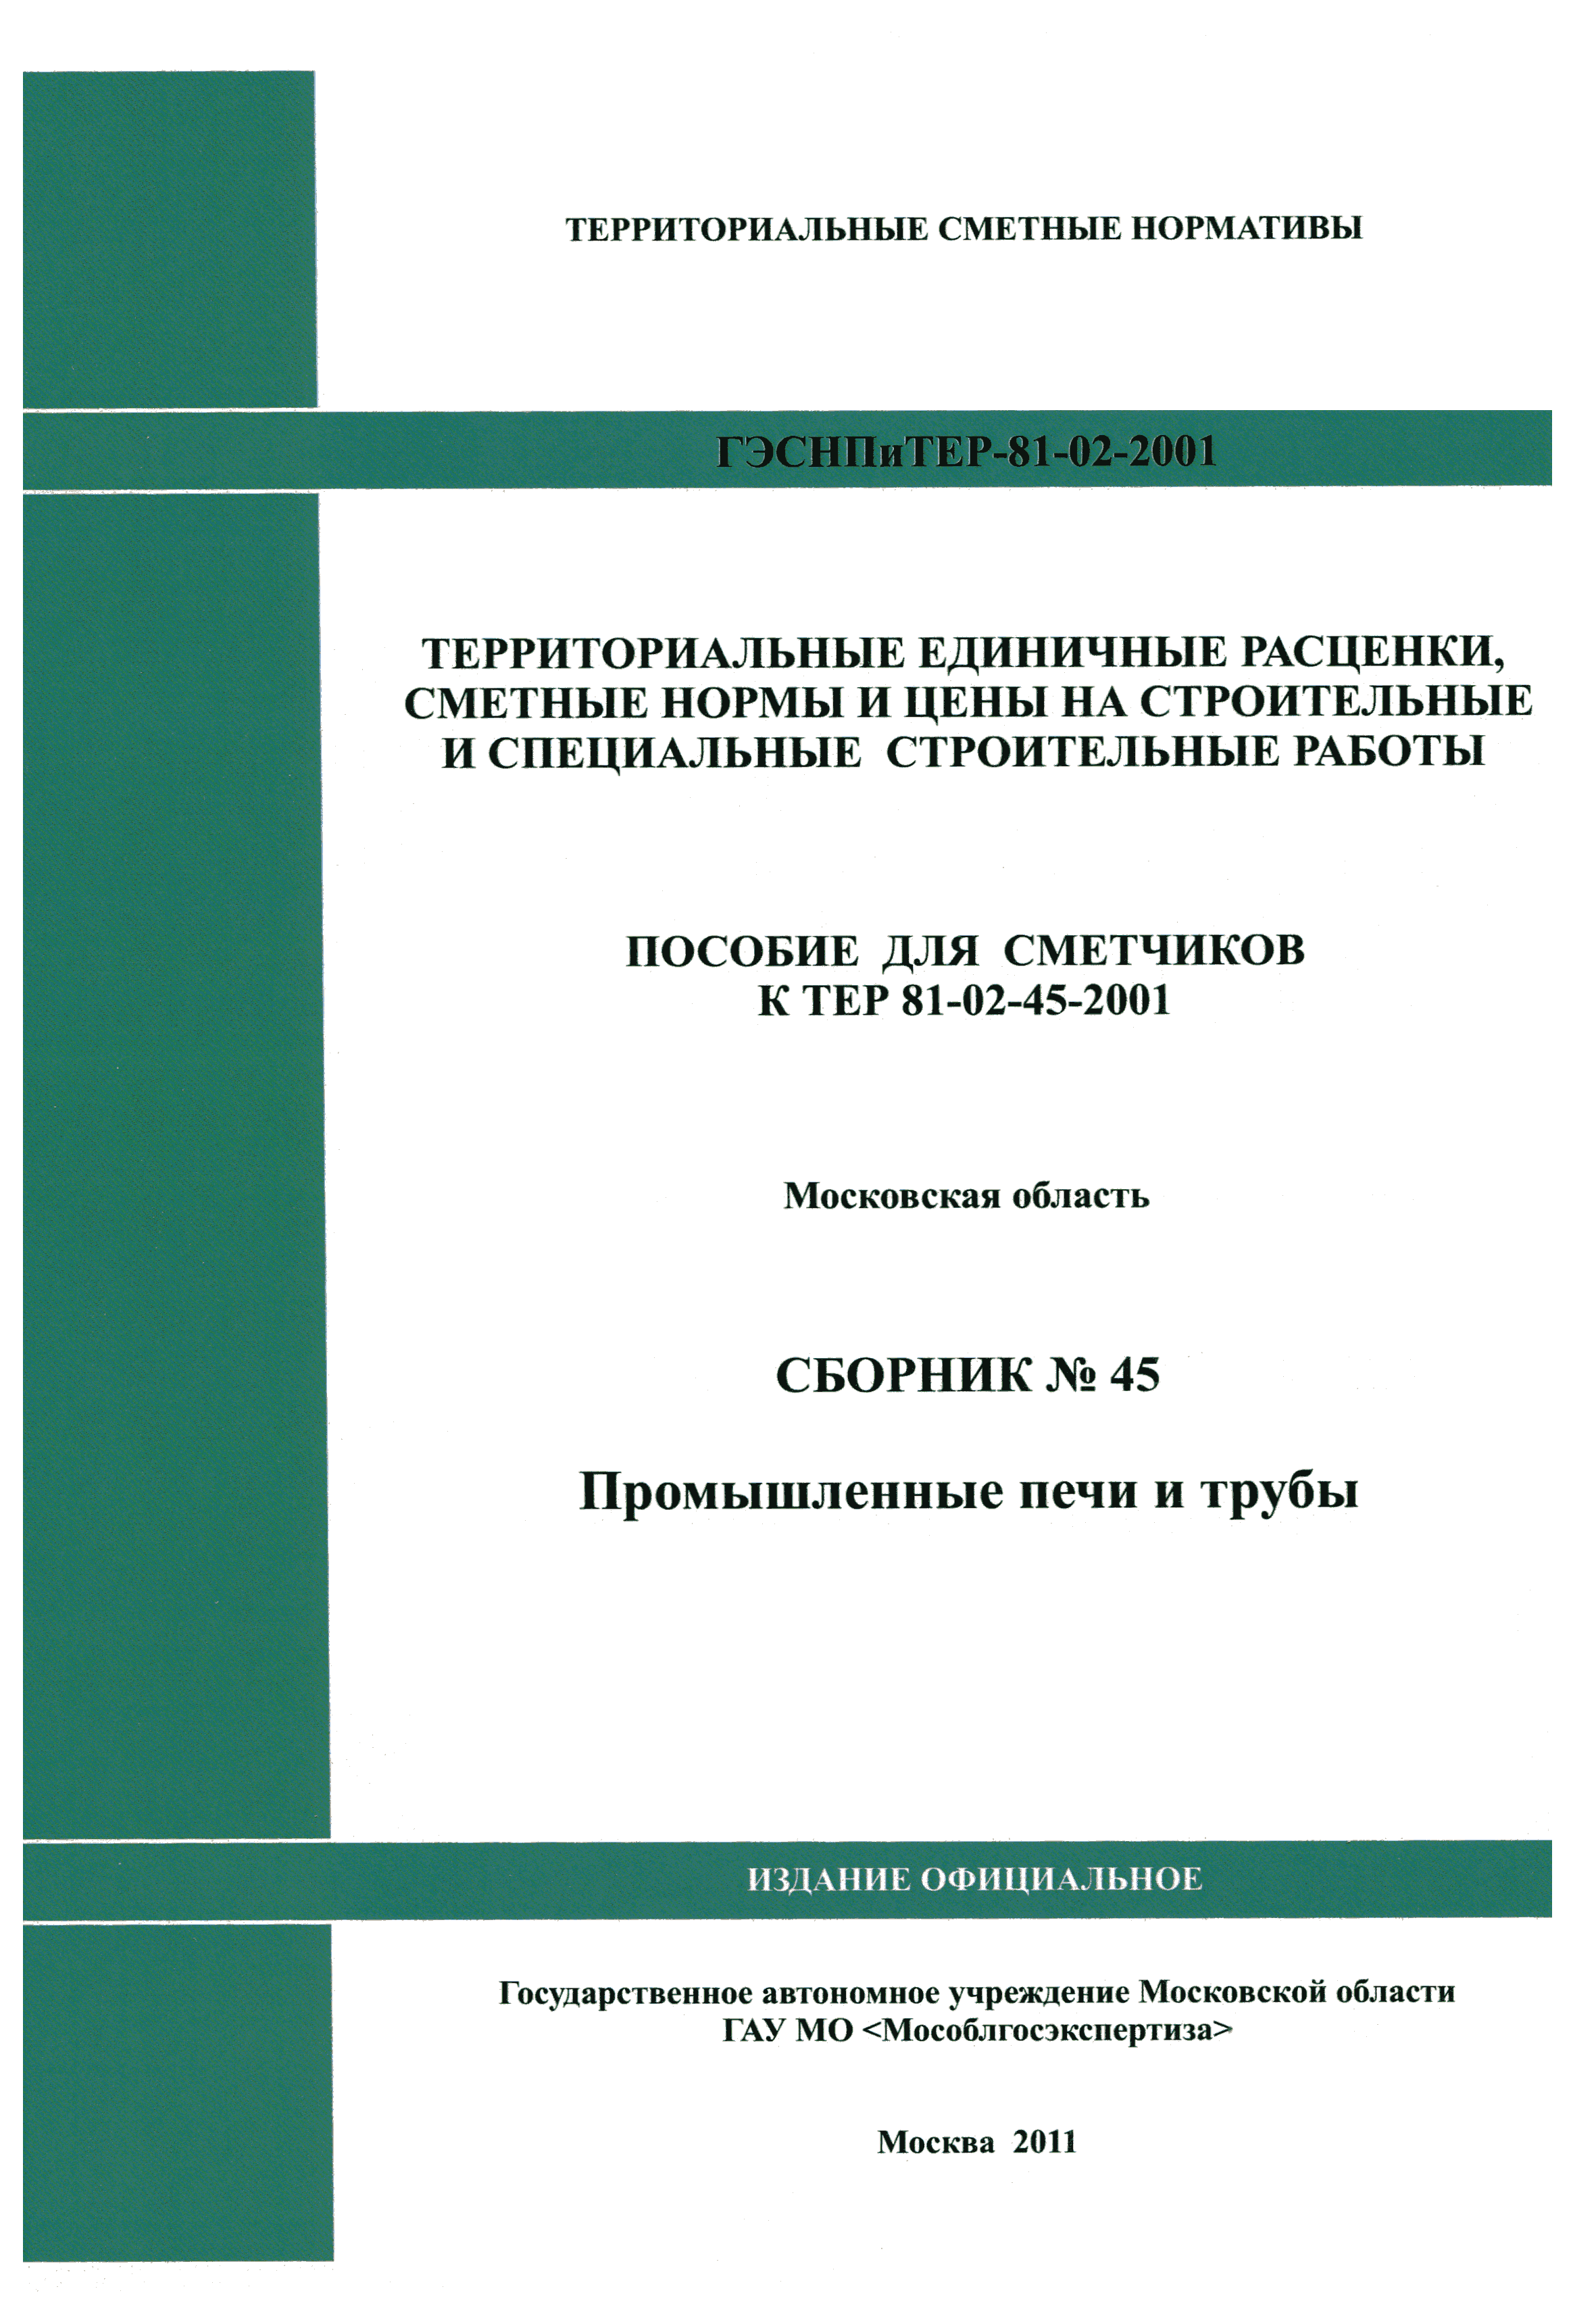 ГЭСНПиТЕР 2001-45 Московской области